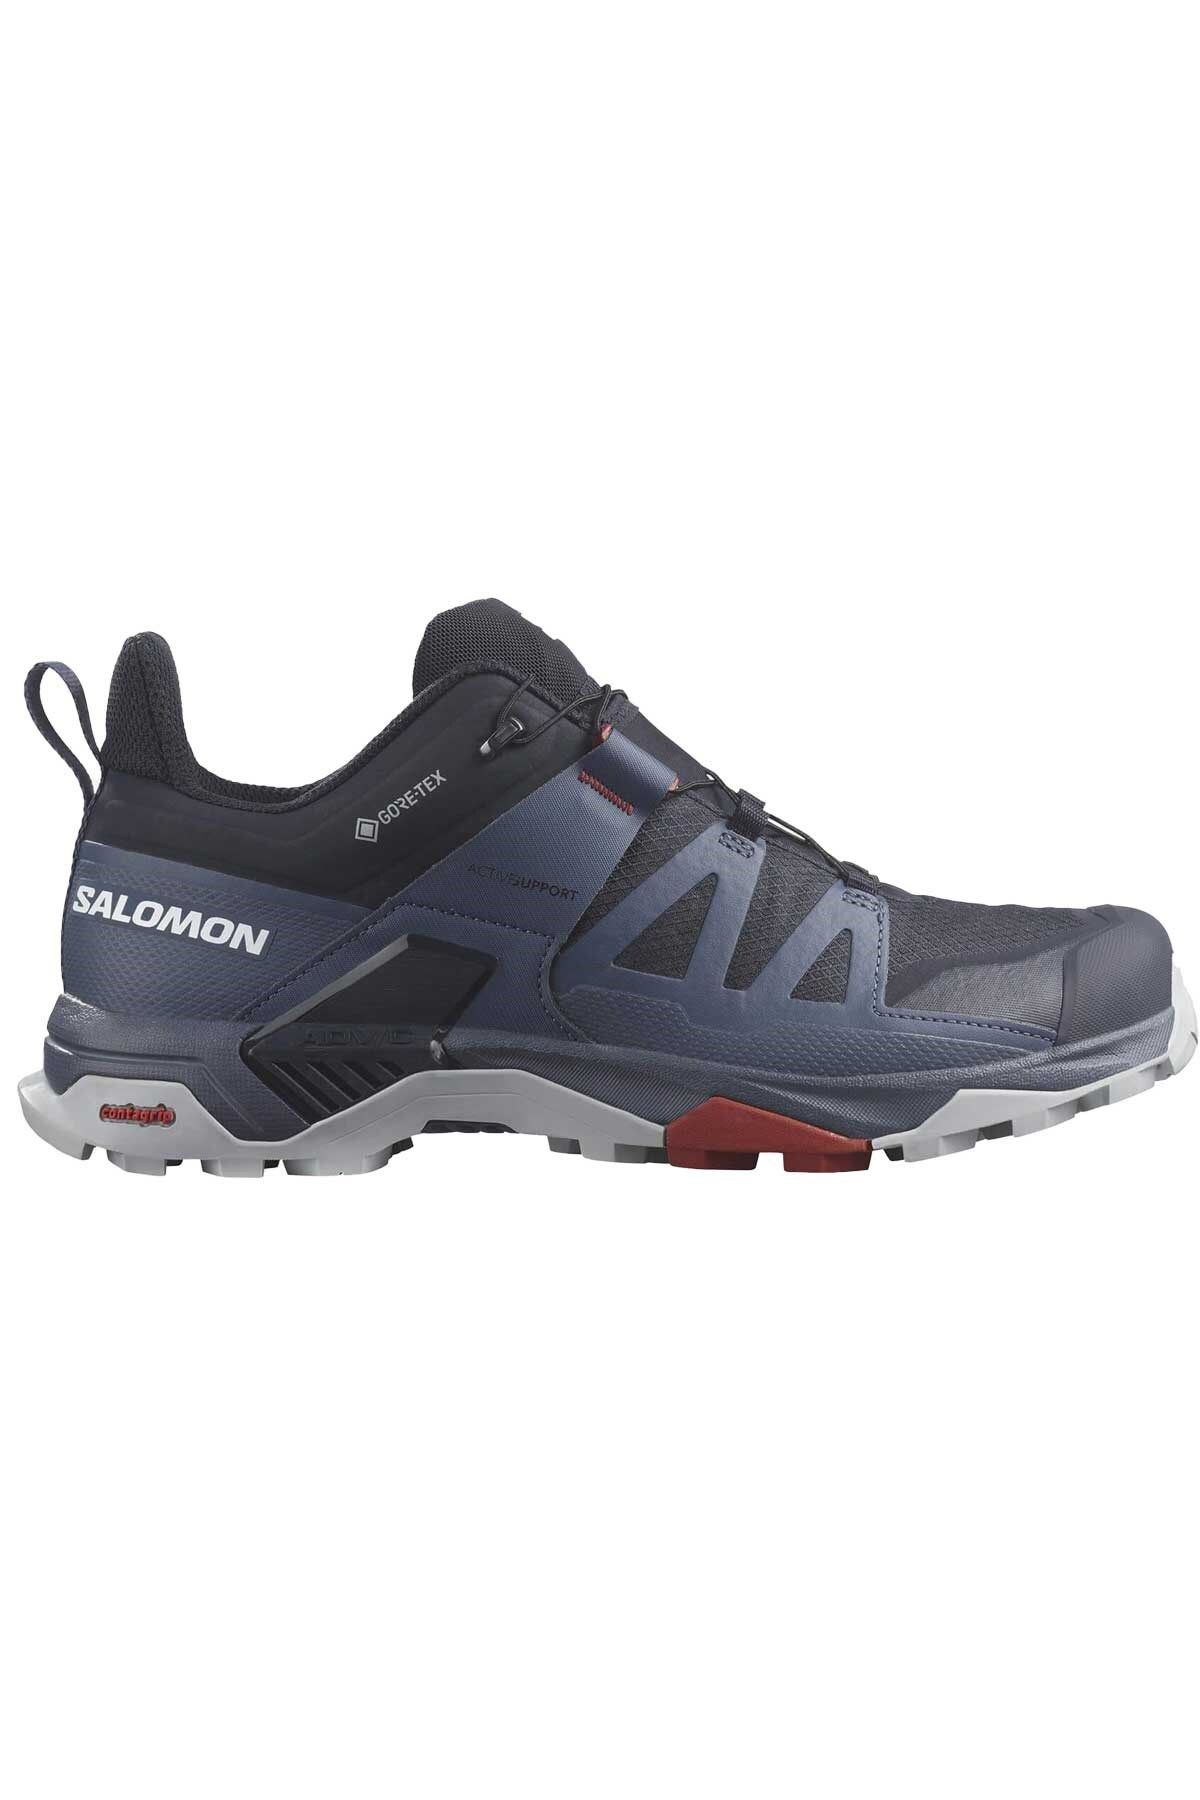 Salomon X Ultra 4 GTX Erkek Outdoor Ayakkabı L47376500